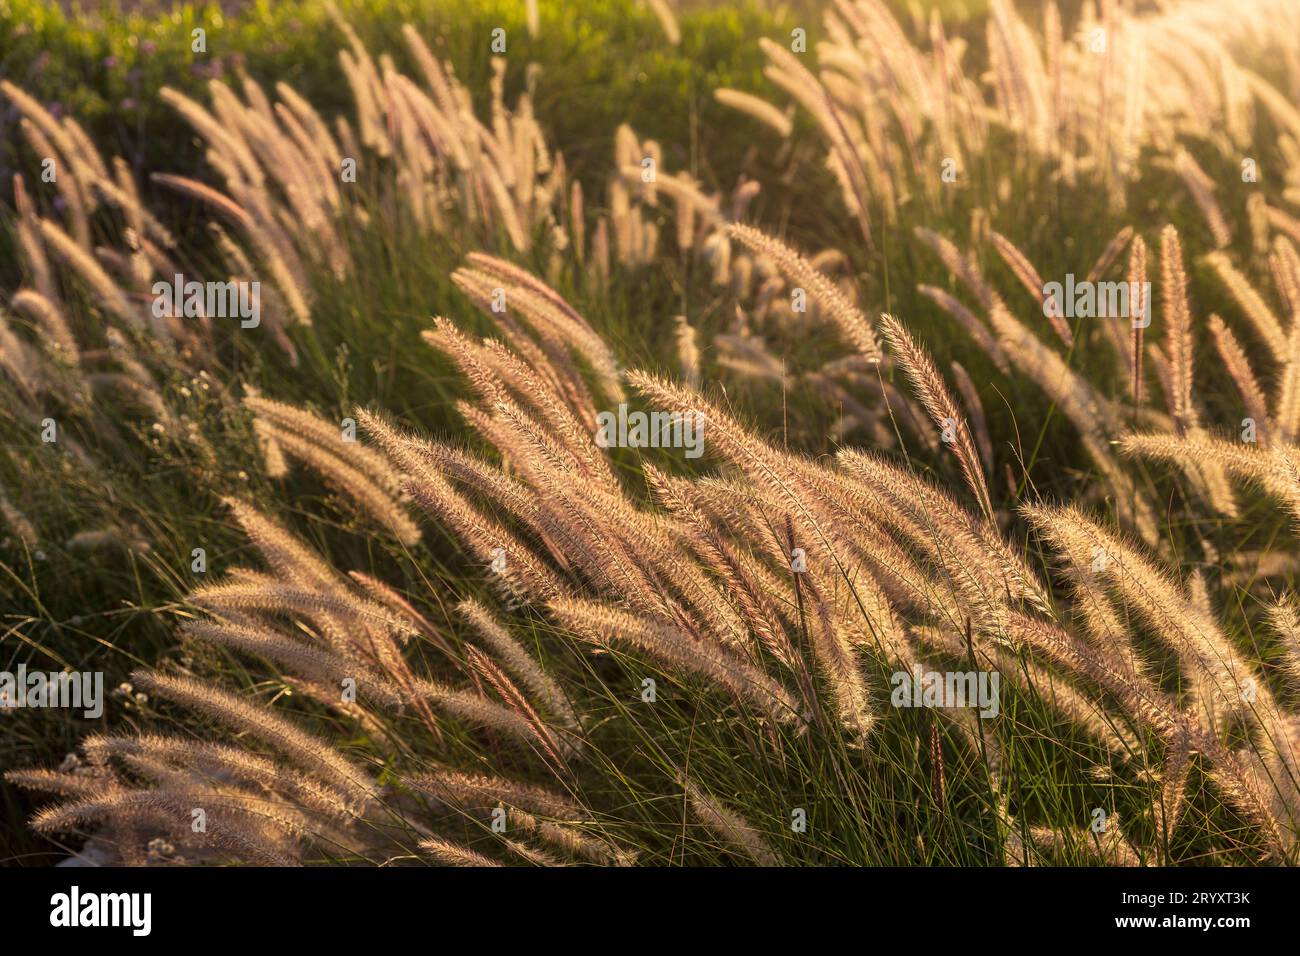 Cenchrus purpureus, Synonym Pennisetum purpureum, auch bekannt als Napier Grass, bei Sonnenuntergang in der Nähe des Mittelmeers. Die Flora Israels. Stockfoto